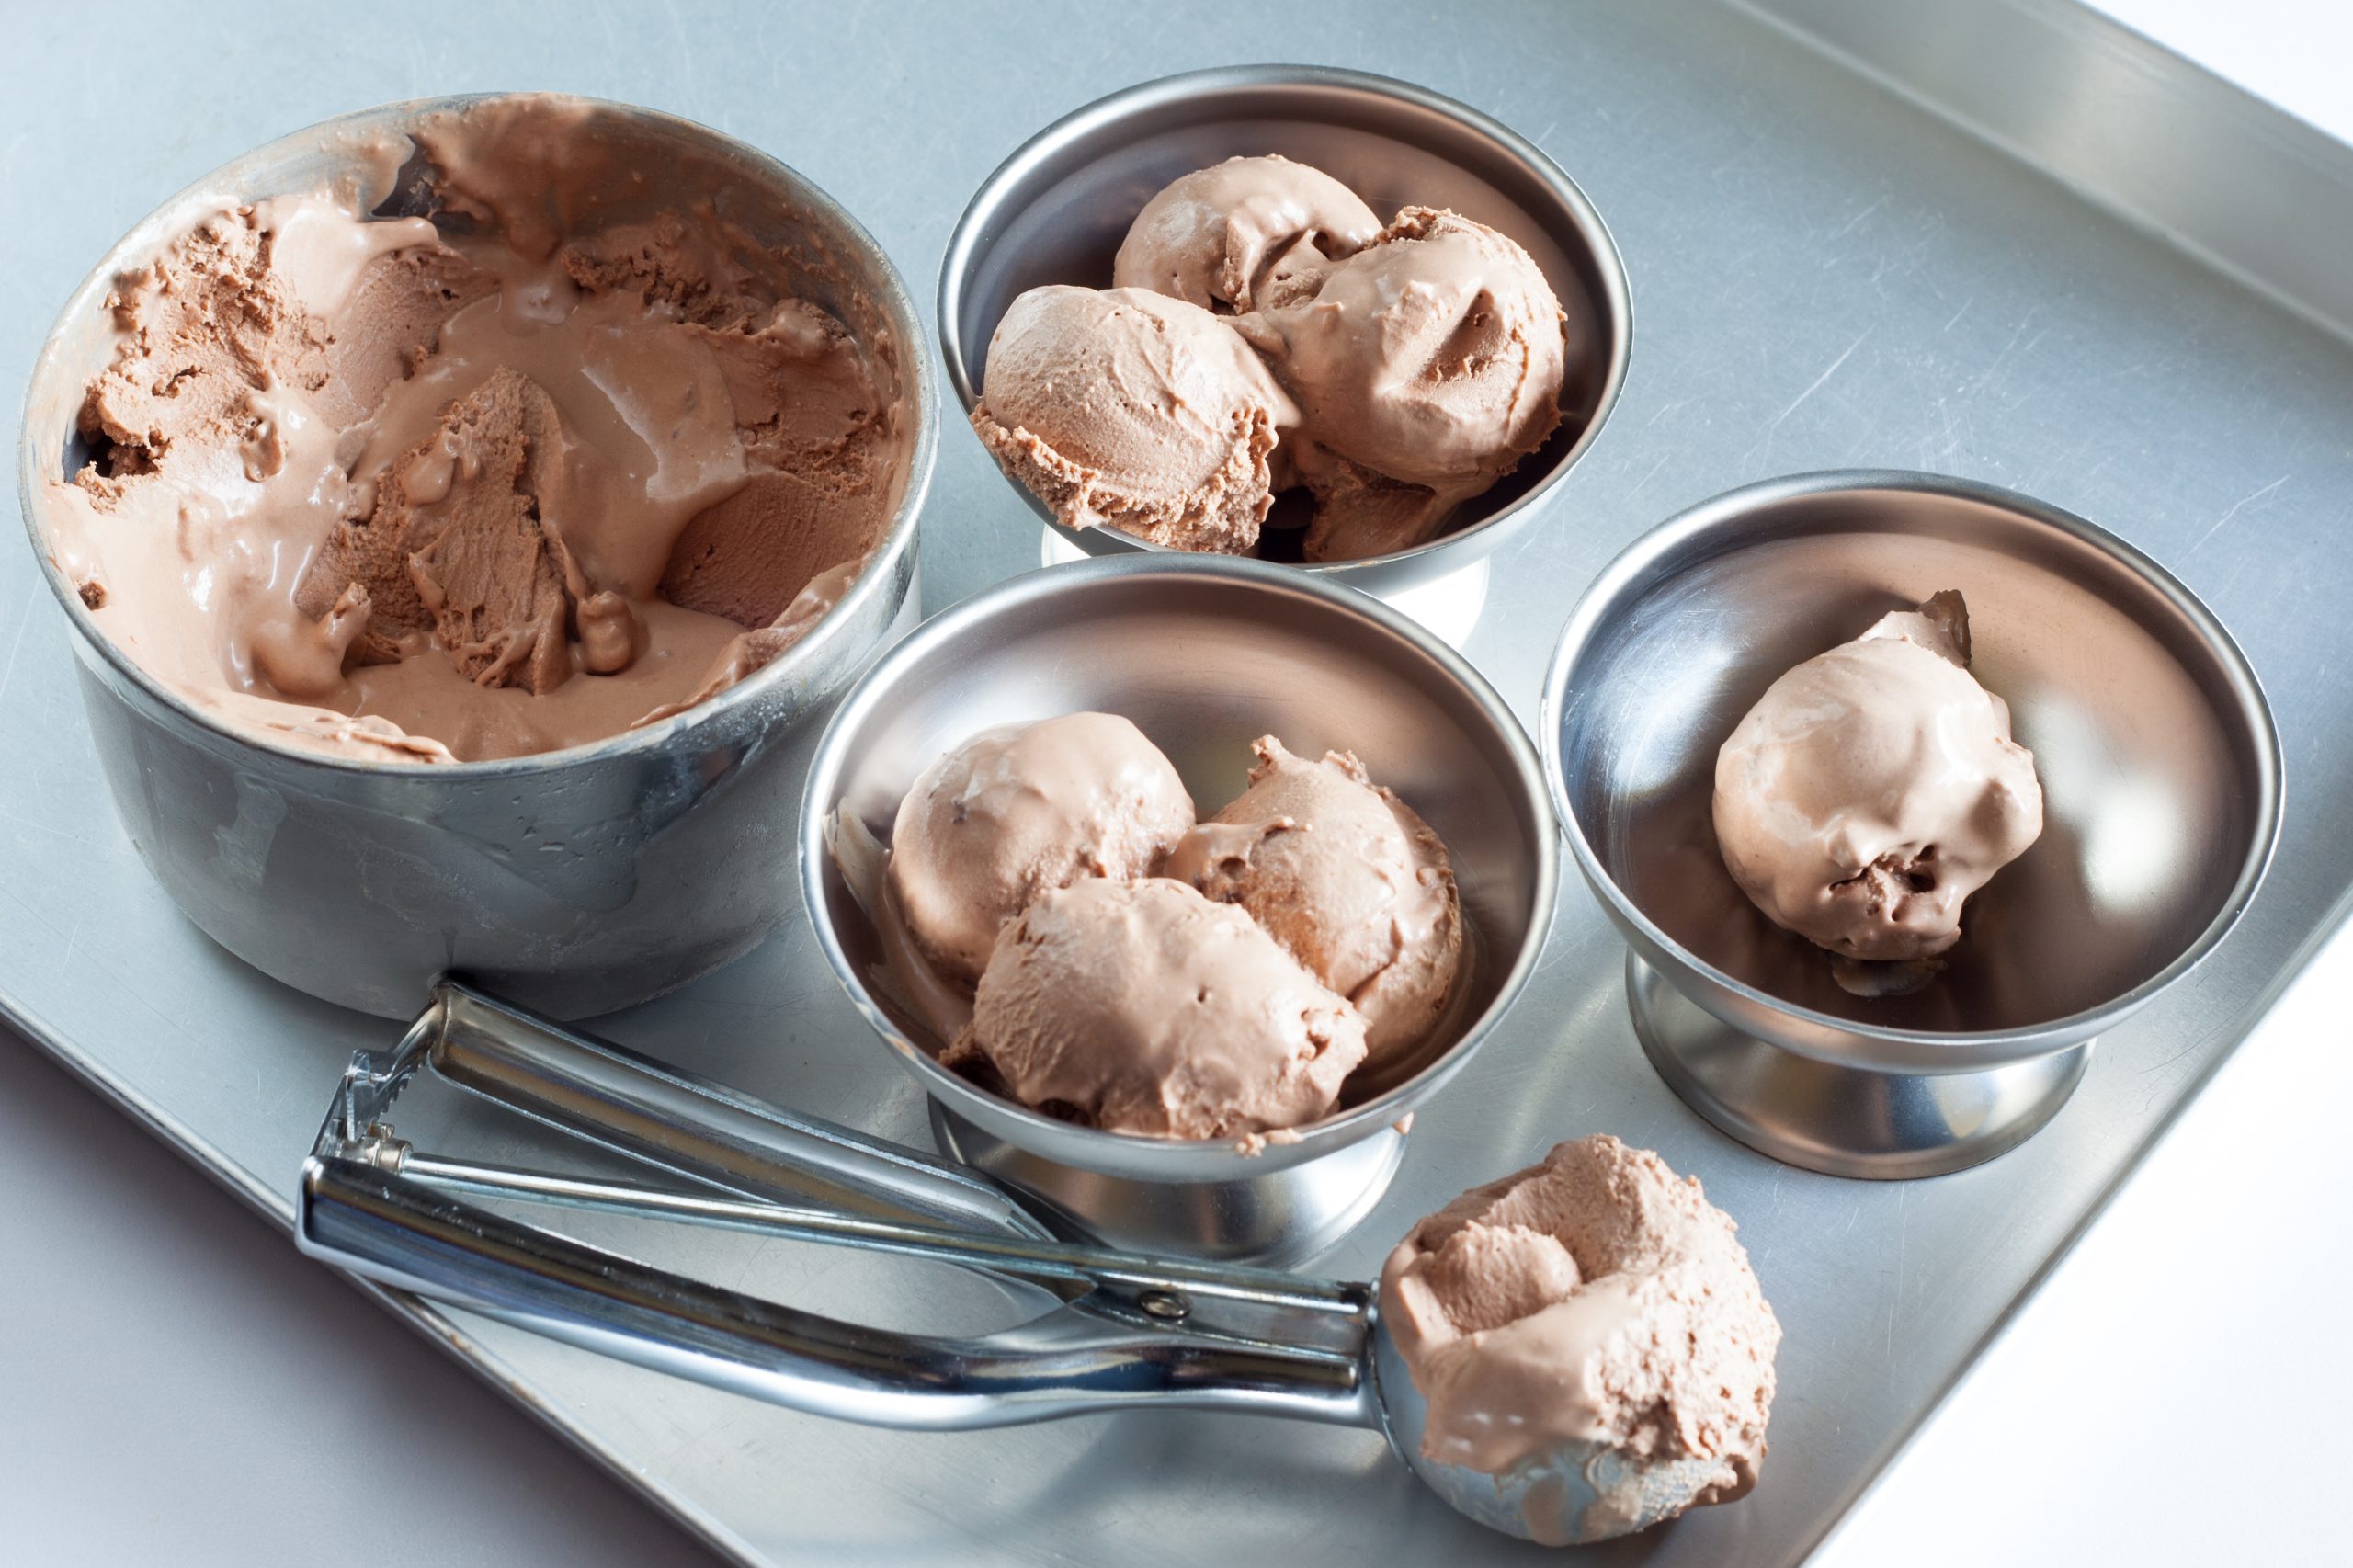 Viralni recept za sladoled od samo dva sastojka koji obožava ceo TikTok